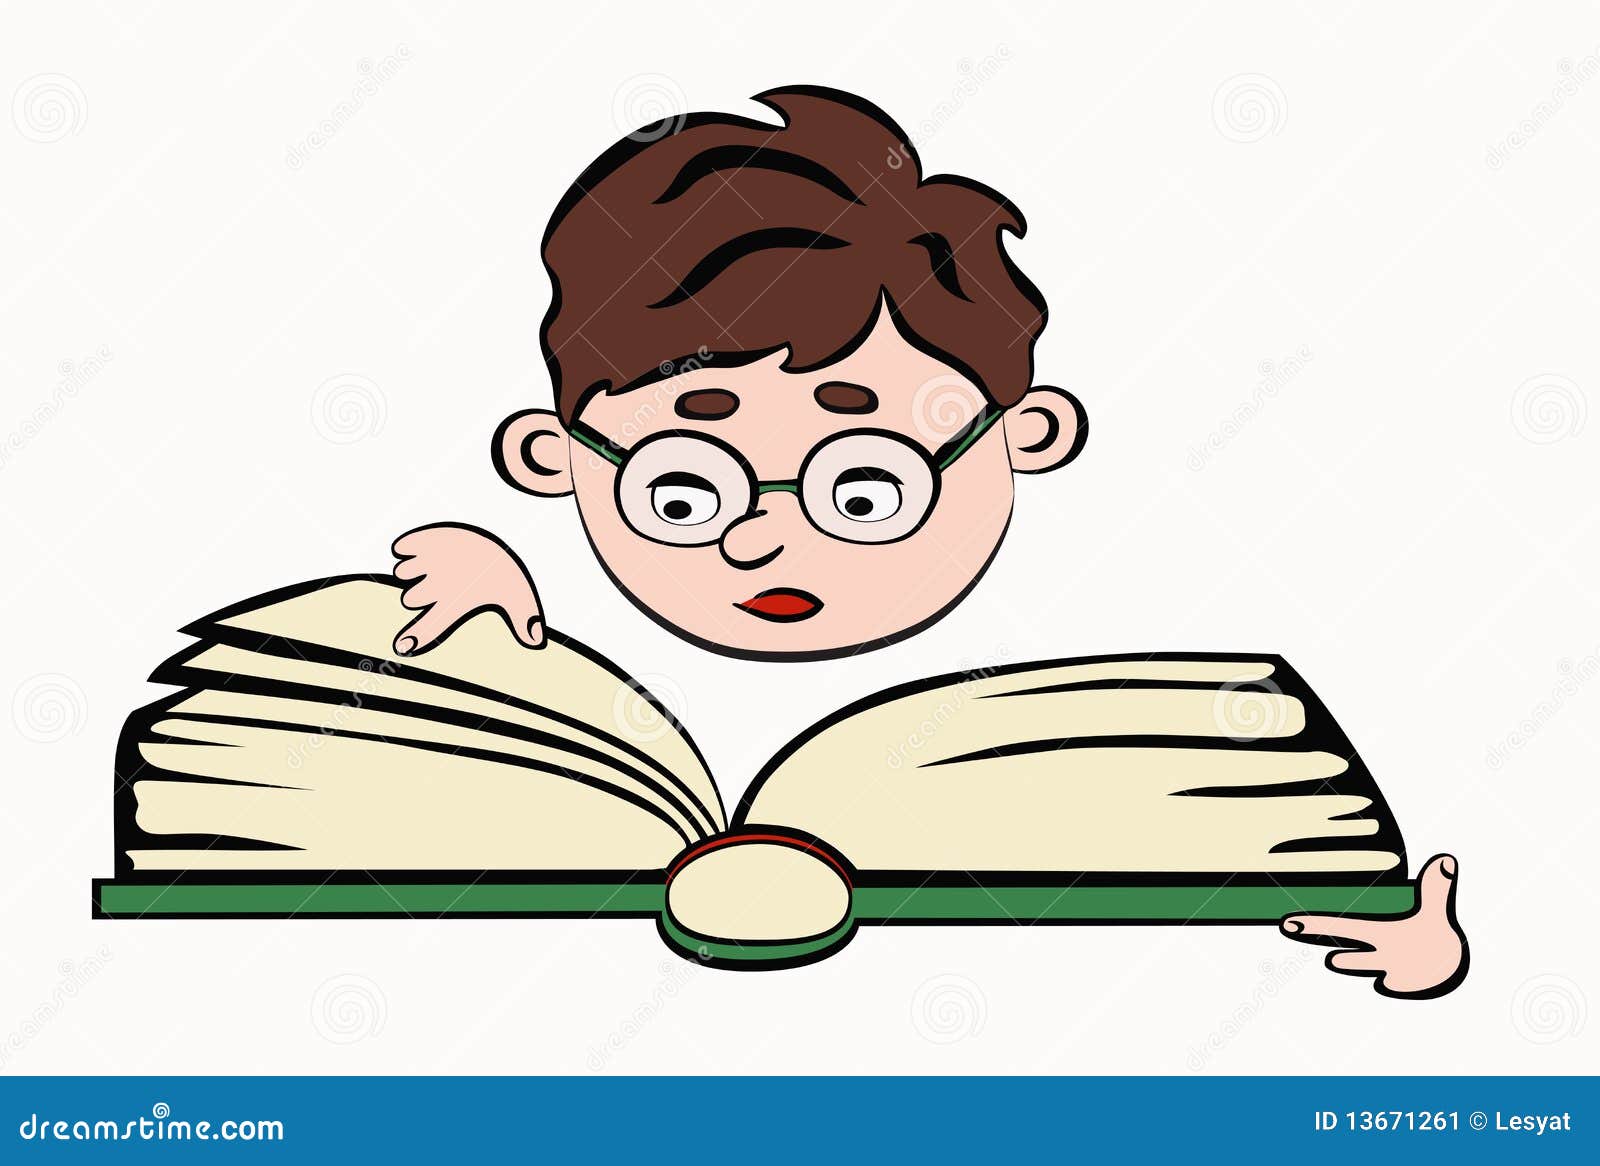 Reading Boy Stock Image - Image: 13671261